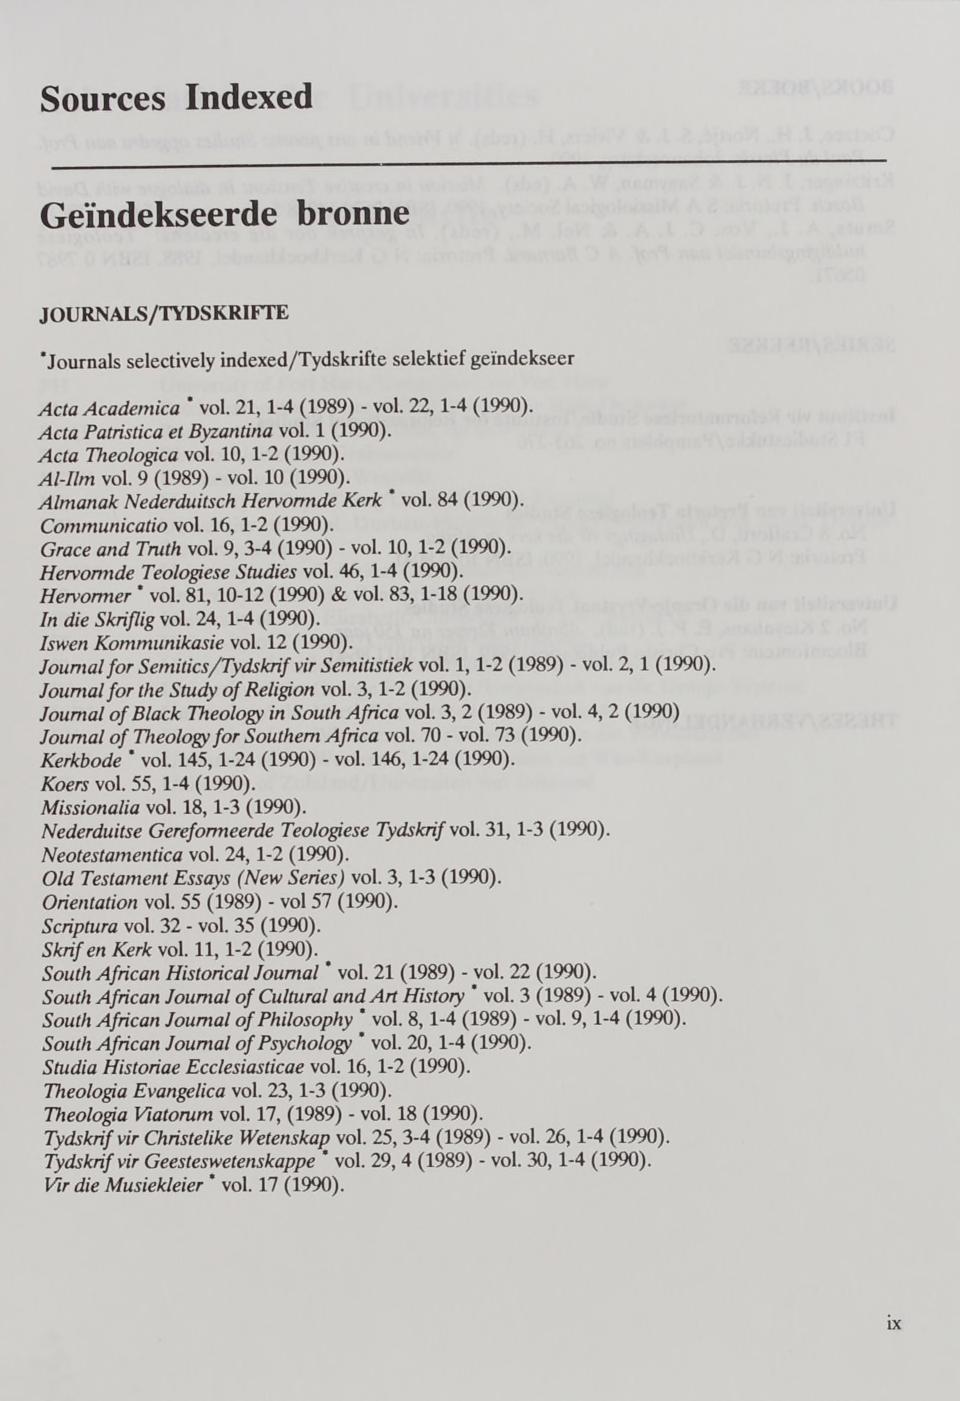 Sources Indexed Geïndekseerde bronne JOURNALS/TYDSKRIFTE Journals selectively indexed/tydskrifte selektief gei'ndekseer Acta Academica vol. 21,1-4 (1989) - vol. 22,1-4 (1990).